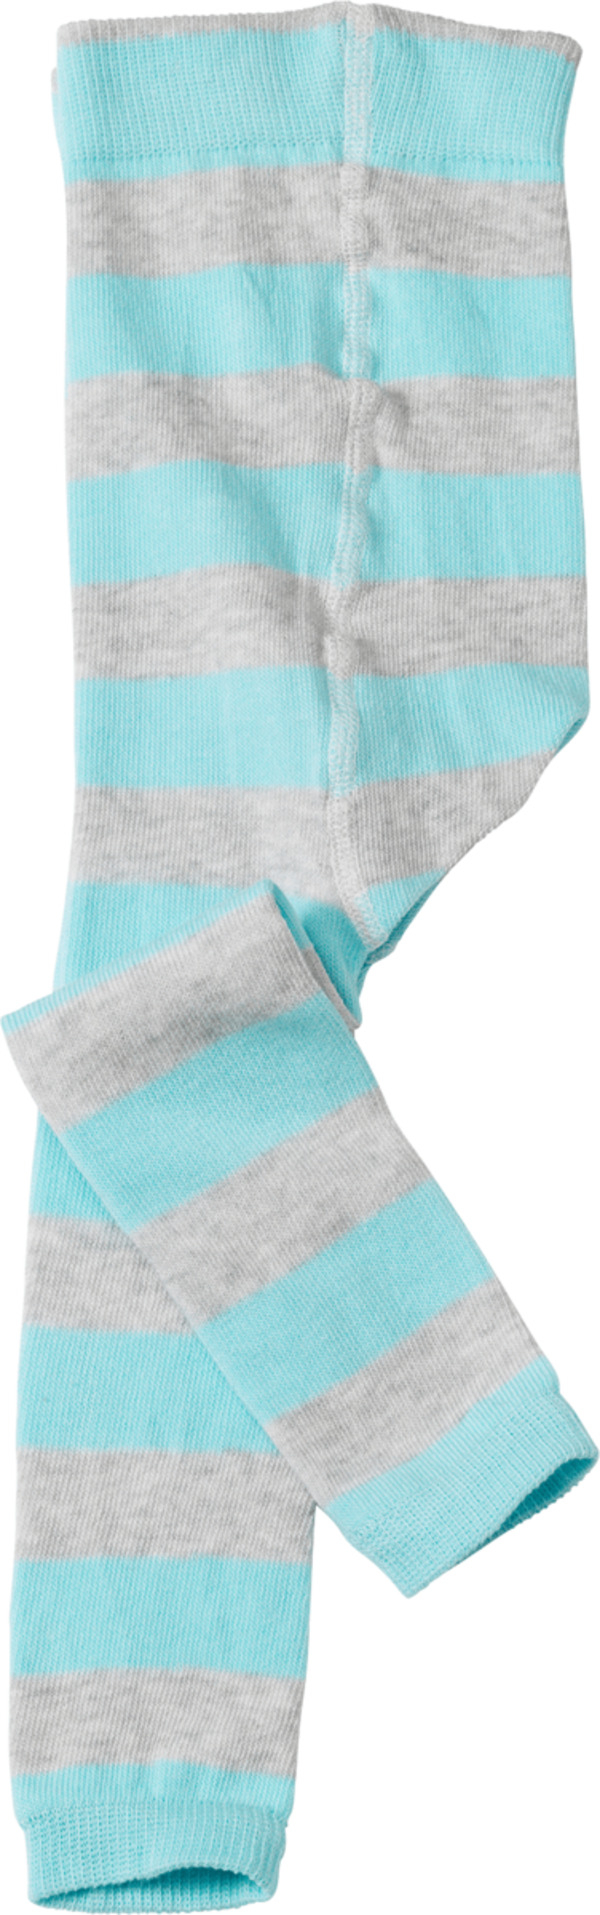 Bild 1 von ALANA Baby Leggings, Gr. 74/80, mit Bio-Baumwolle, grau, blau